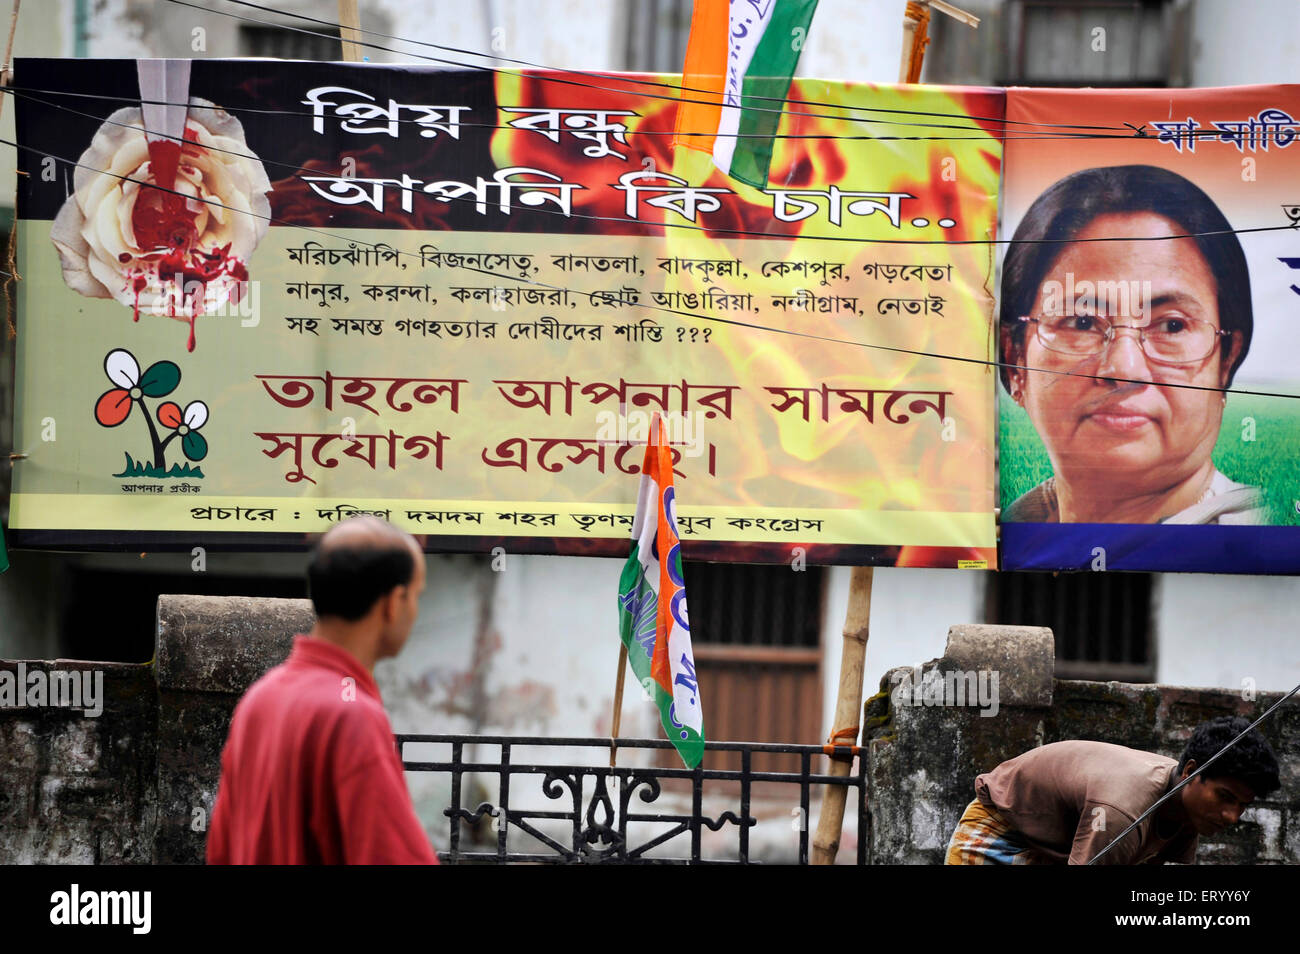 Affiche électorale du Trinamul Chef Mamta Banerjee appelant les fidèles à voter pour un changement Parti au CPM Bengale-occidental Banque D'Images